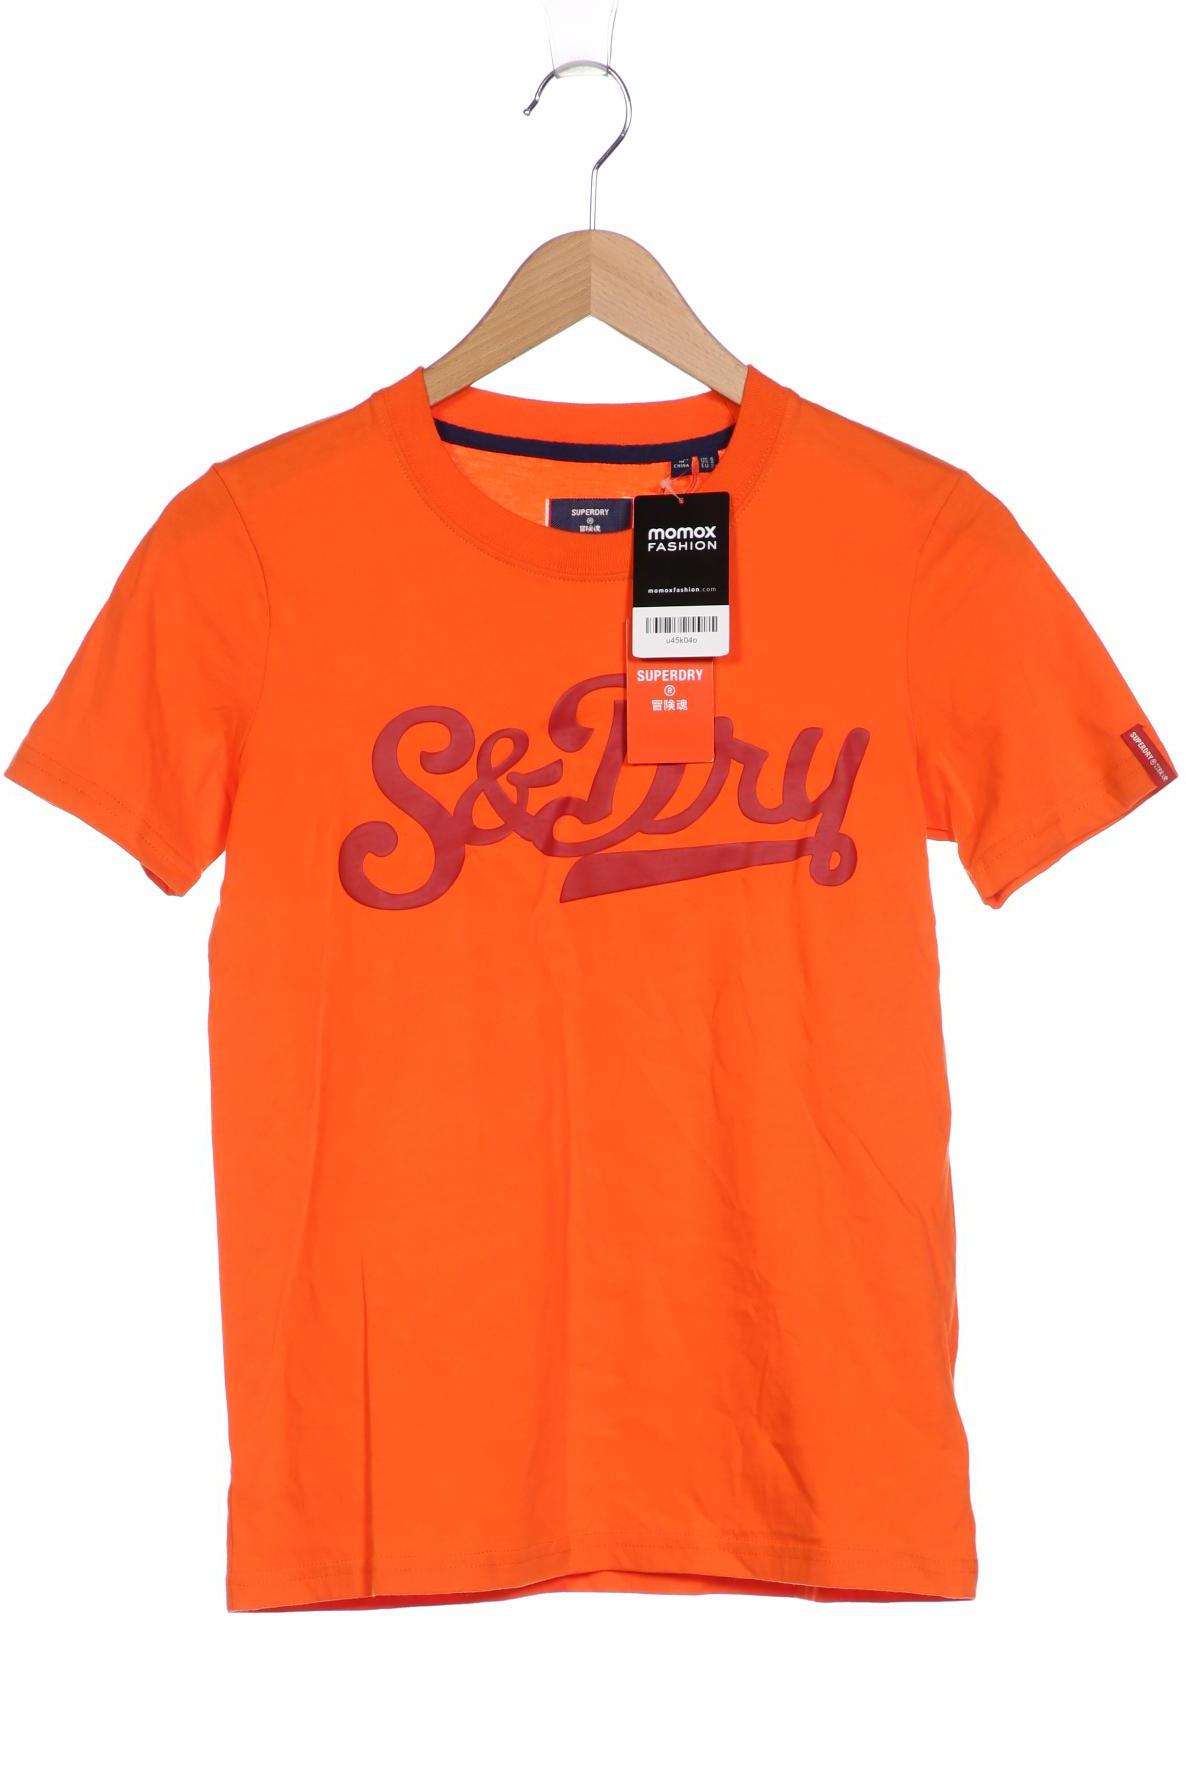 Superdry Damen T-Shirt, orange, Gr. 34 von Superdry